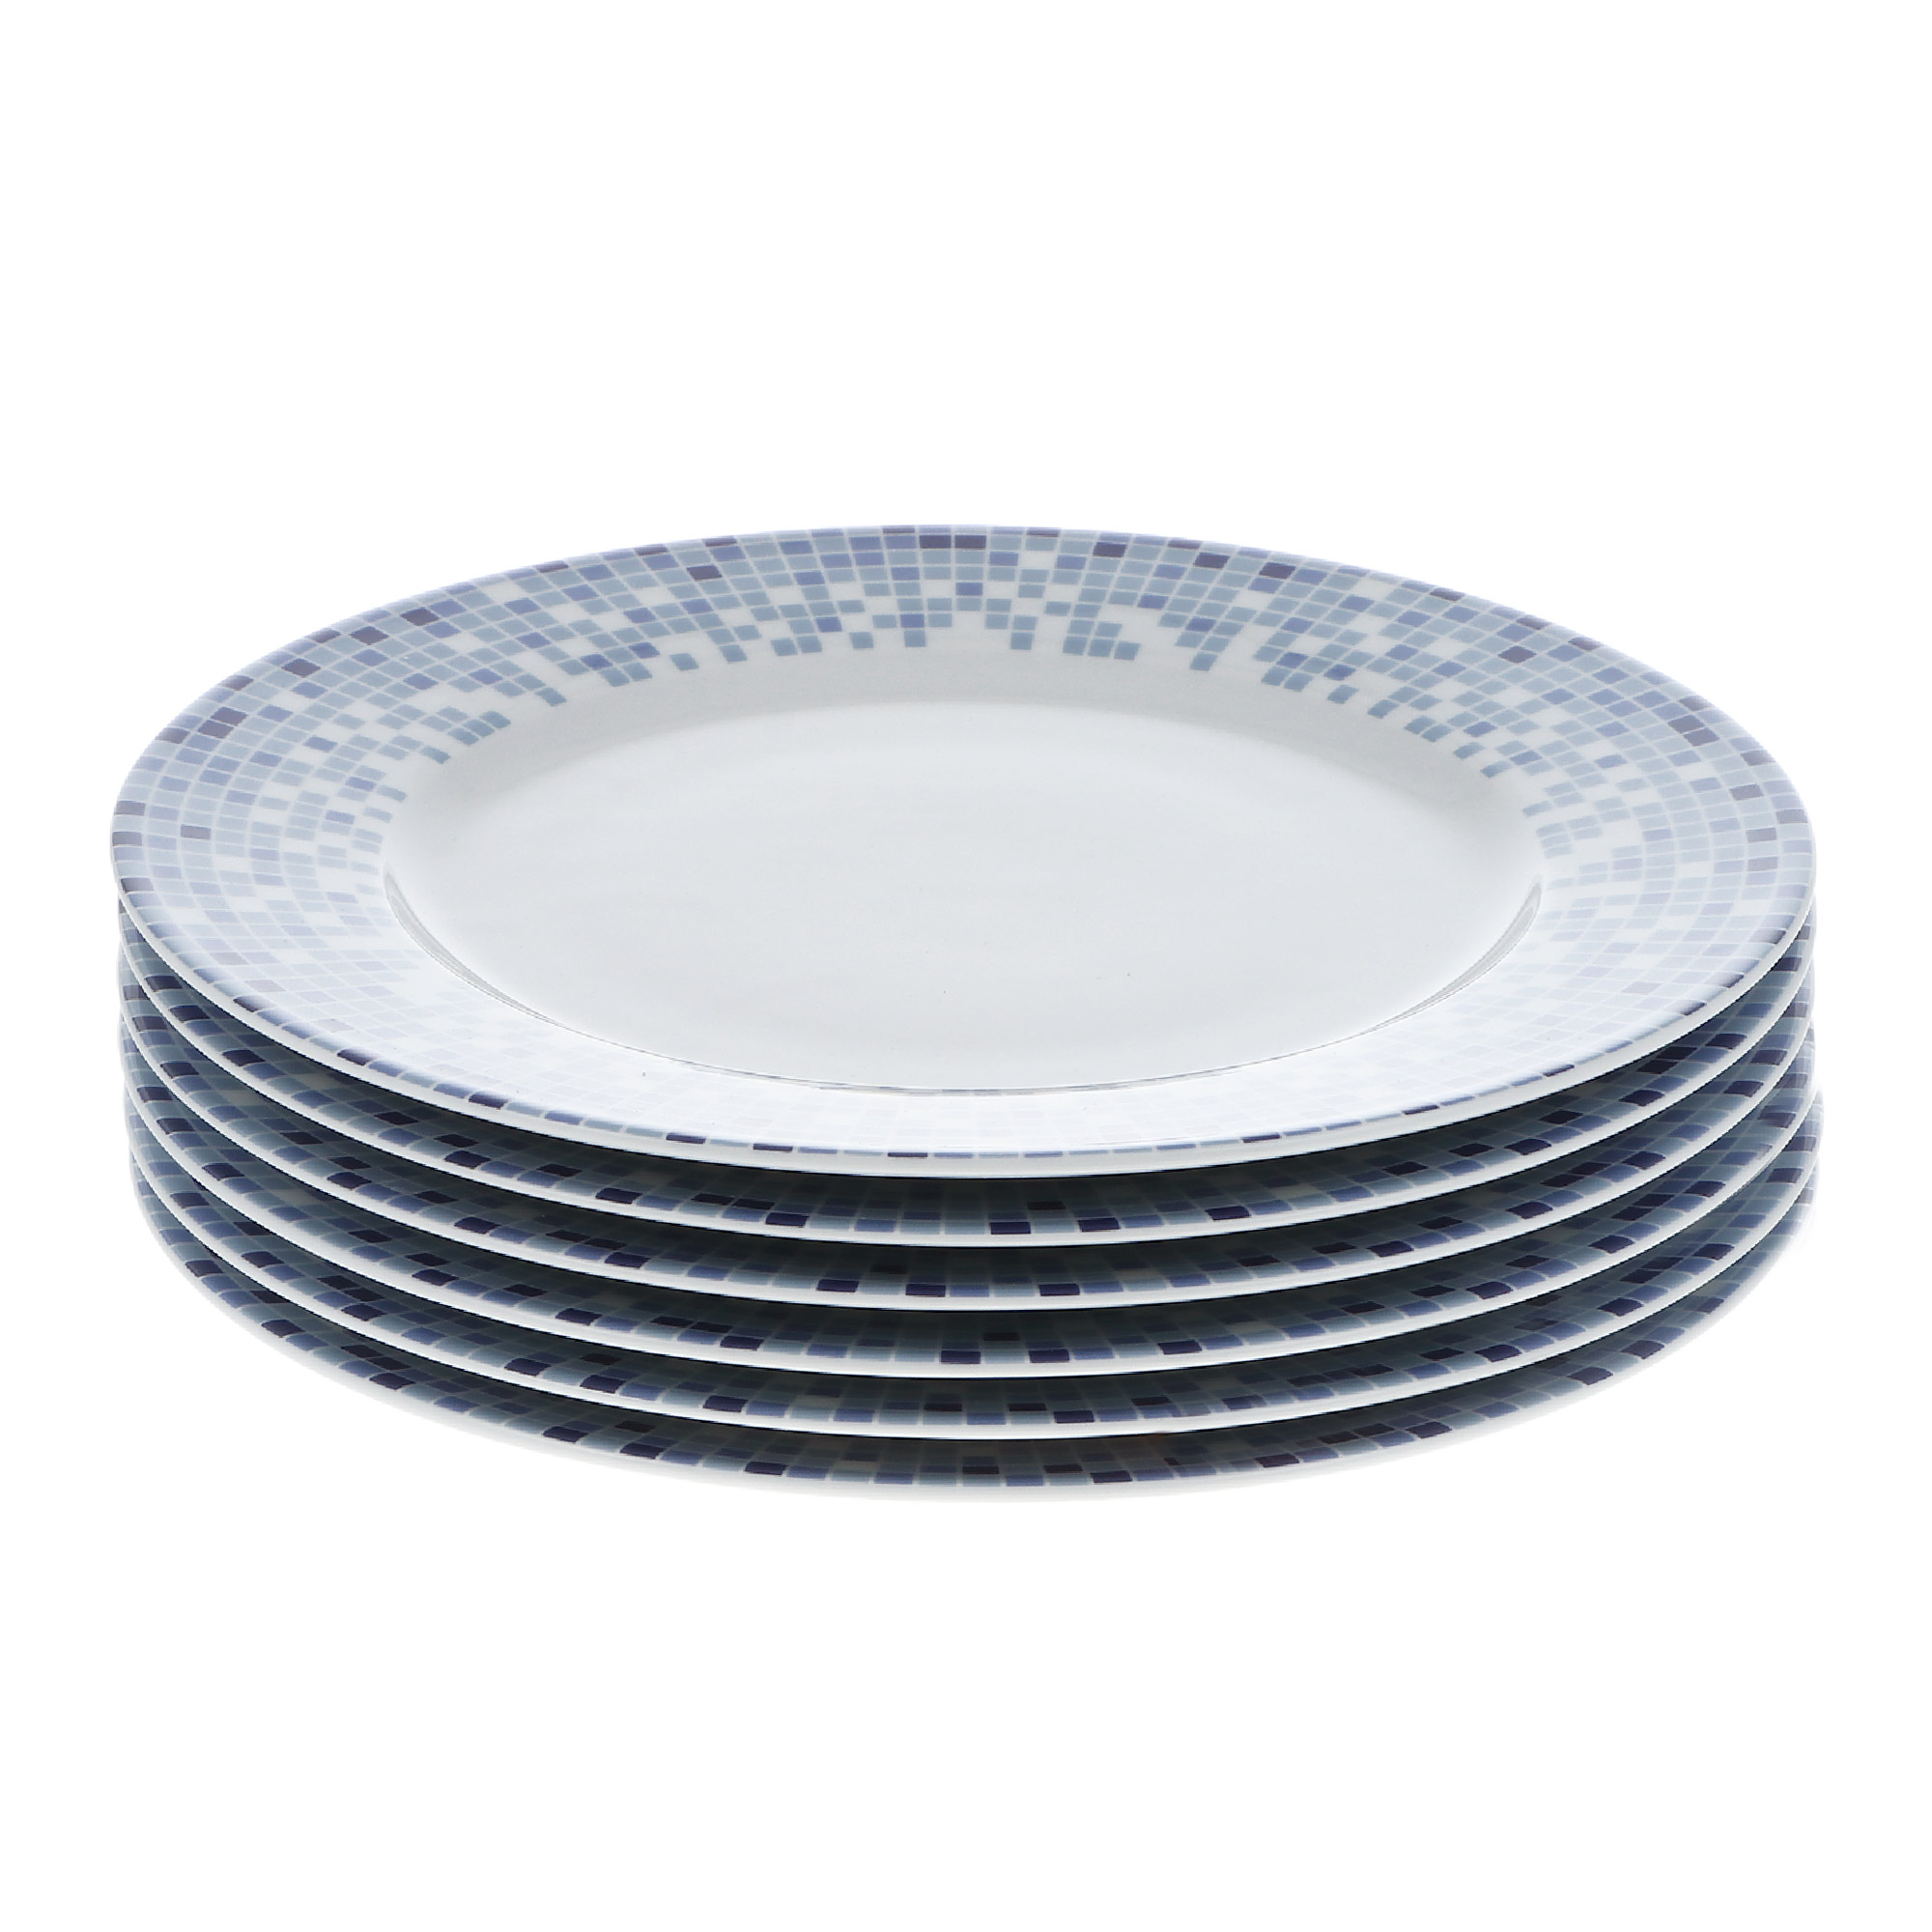 Набор тарелок 19 см декор мозаика Thun1794 набор тарелок мелких 27 см 6шт thun1794 белоснежный тюльпан золотые держатели